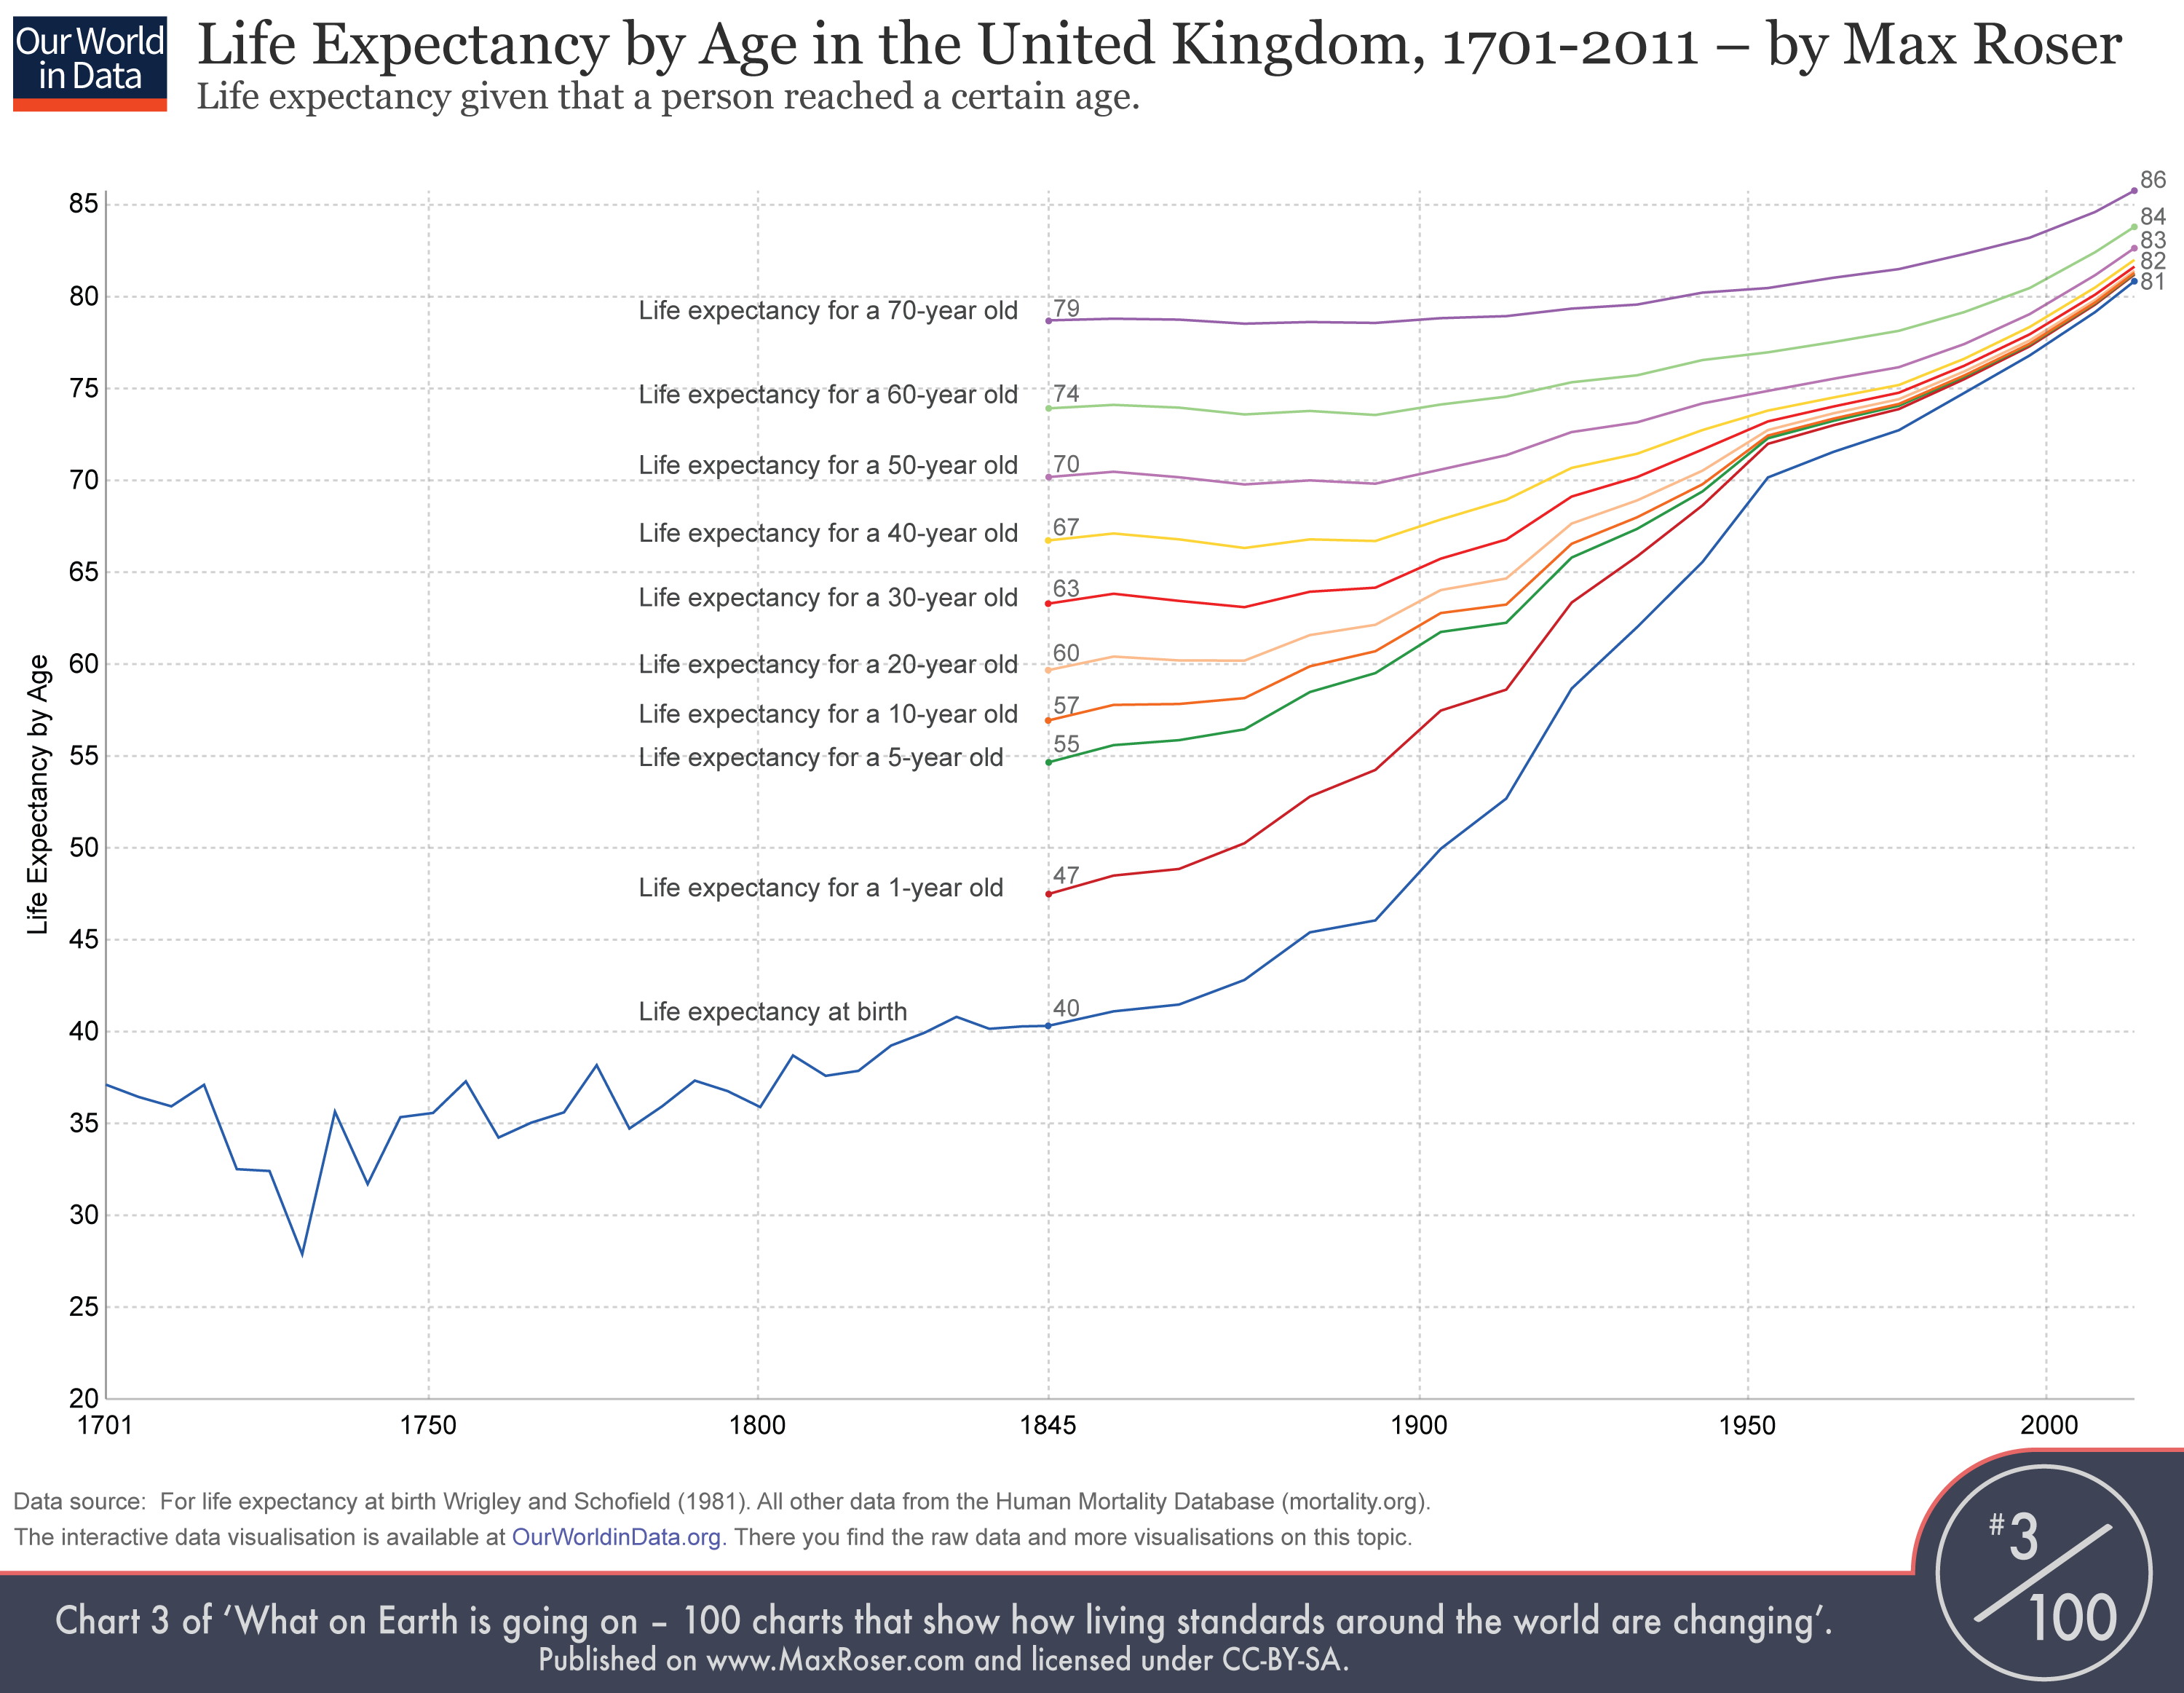 ¿Qué es la esperanza de vida a la edad de uno?